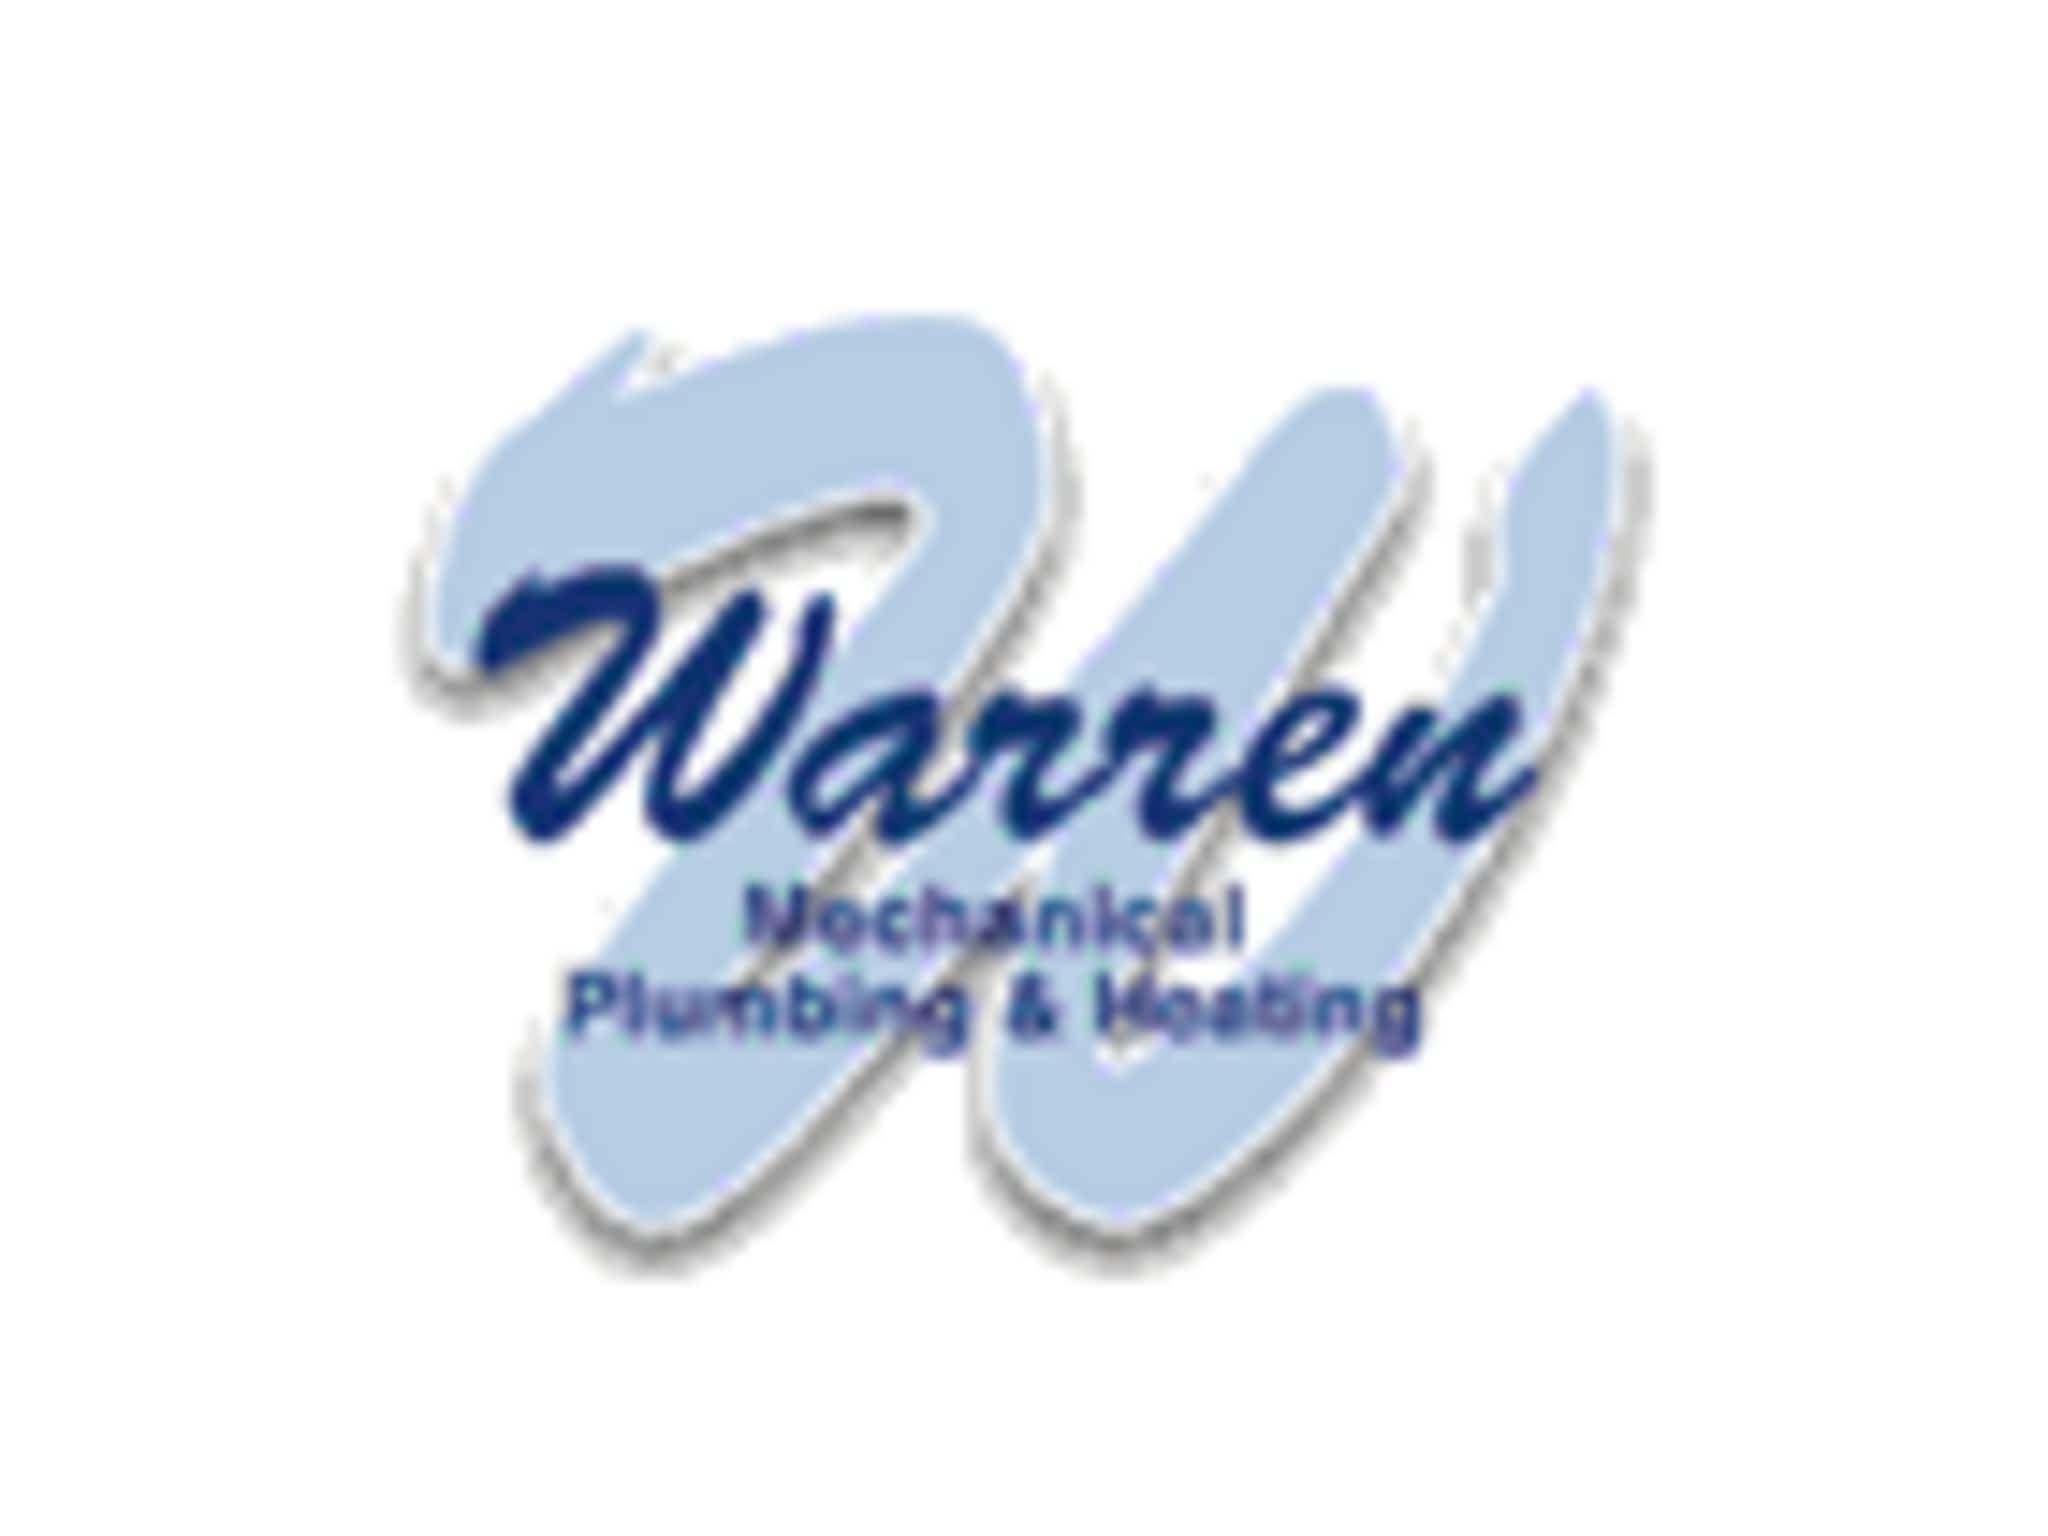 photo Warren Mechanical Plumbing & Heating Contractors